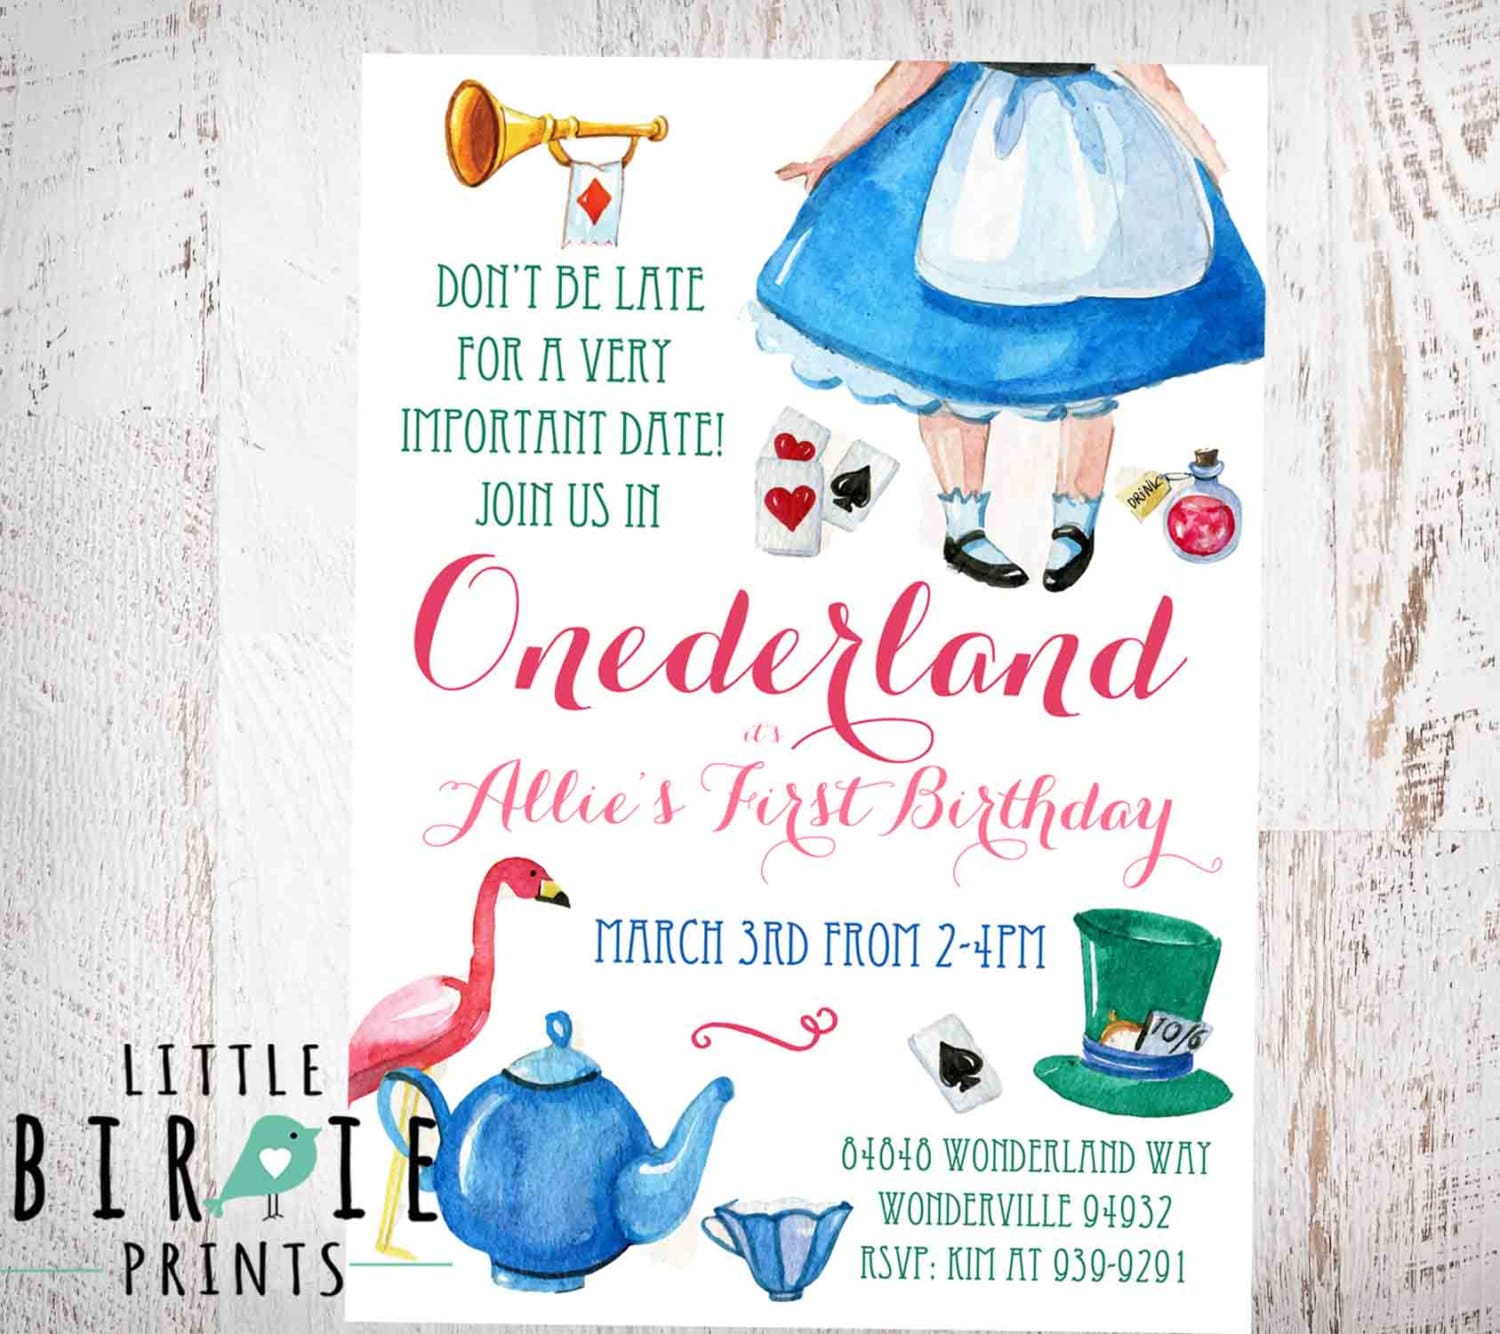 alice-in-onederland-birthday-invitation-by-littlebirdieprints